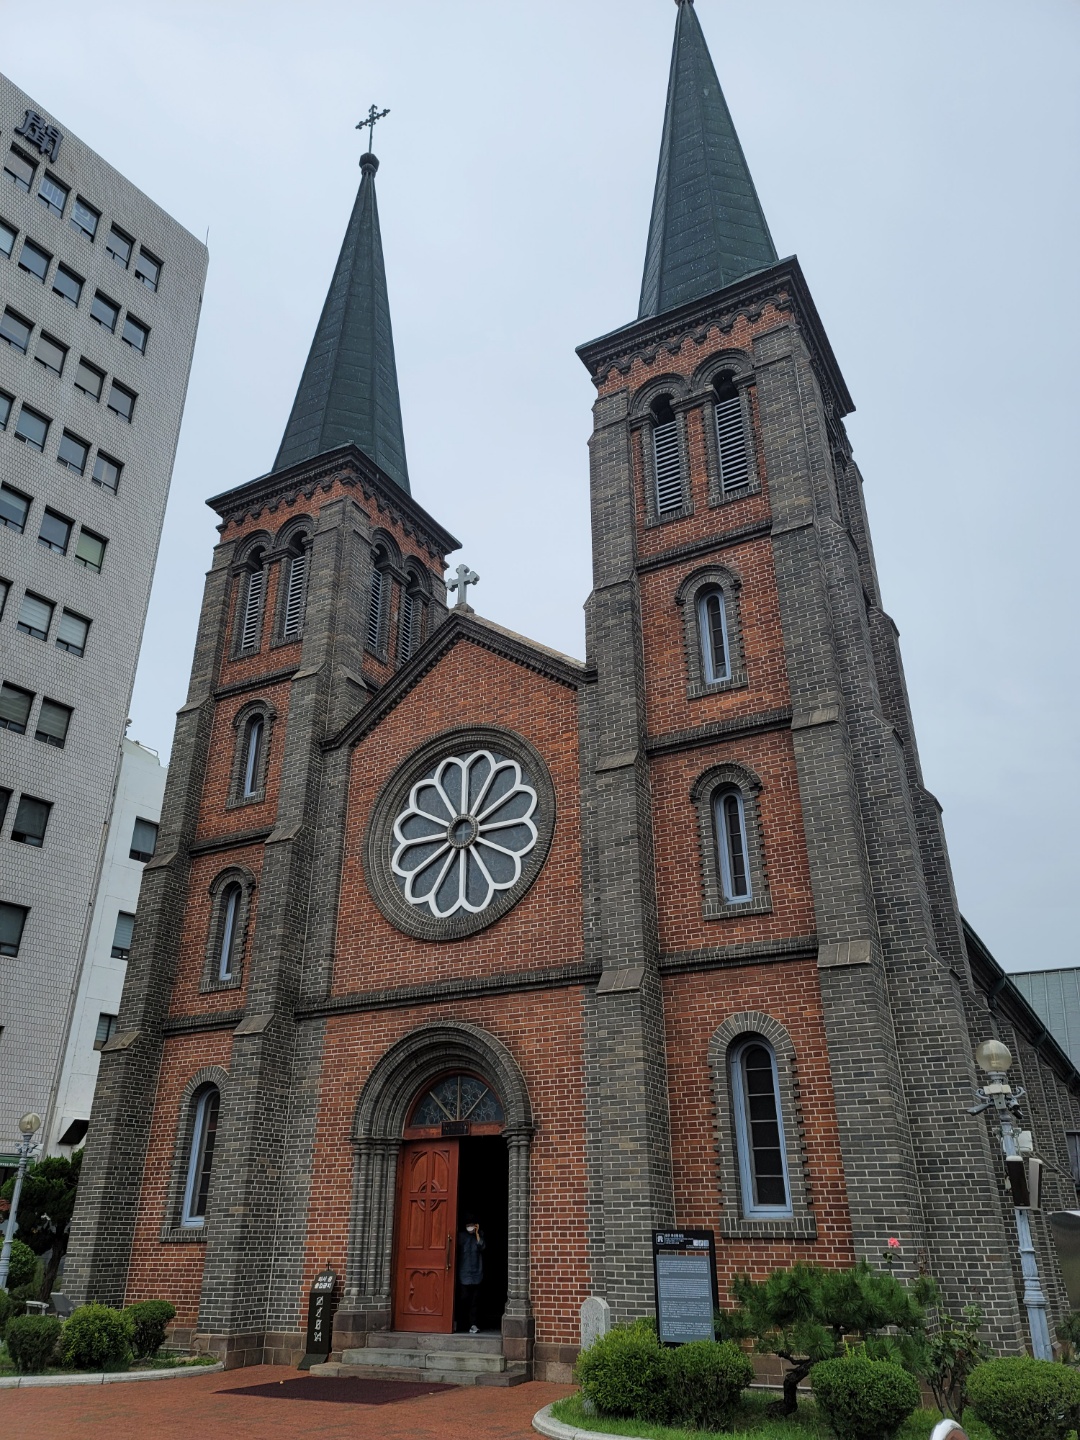 Gyesan Catholic Church